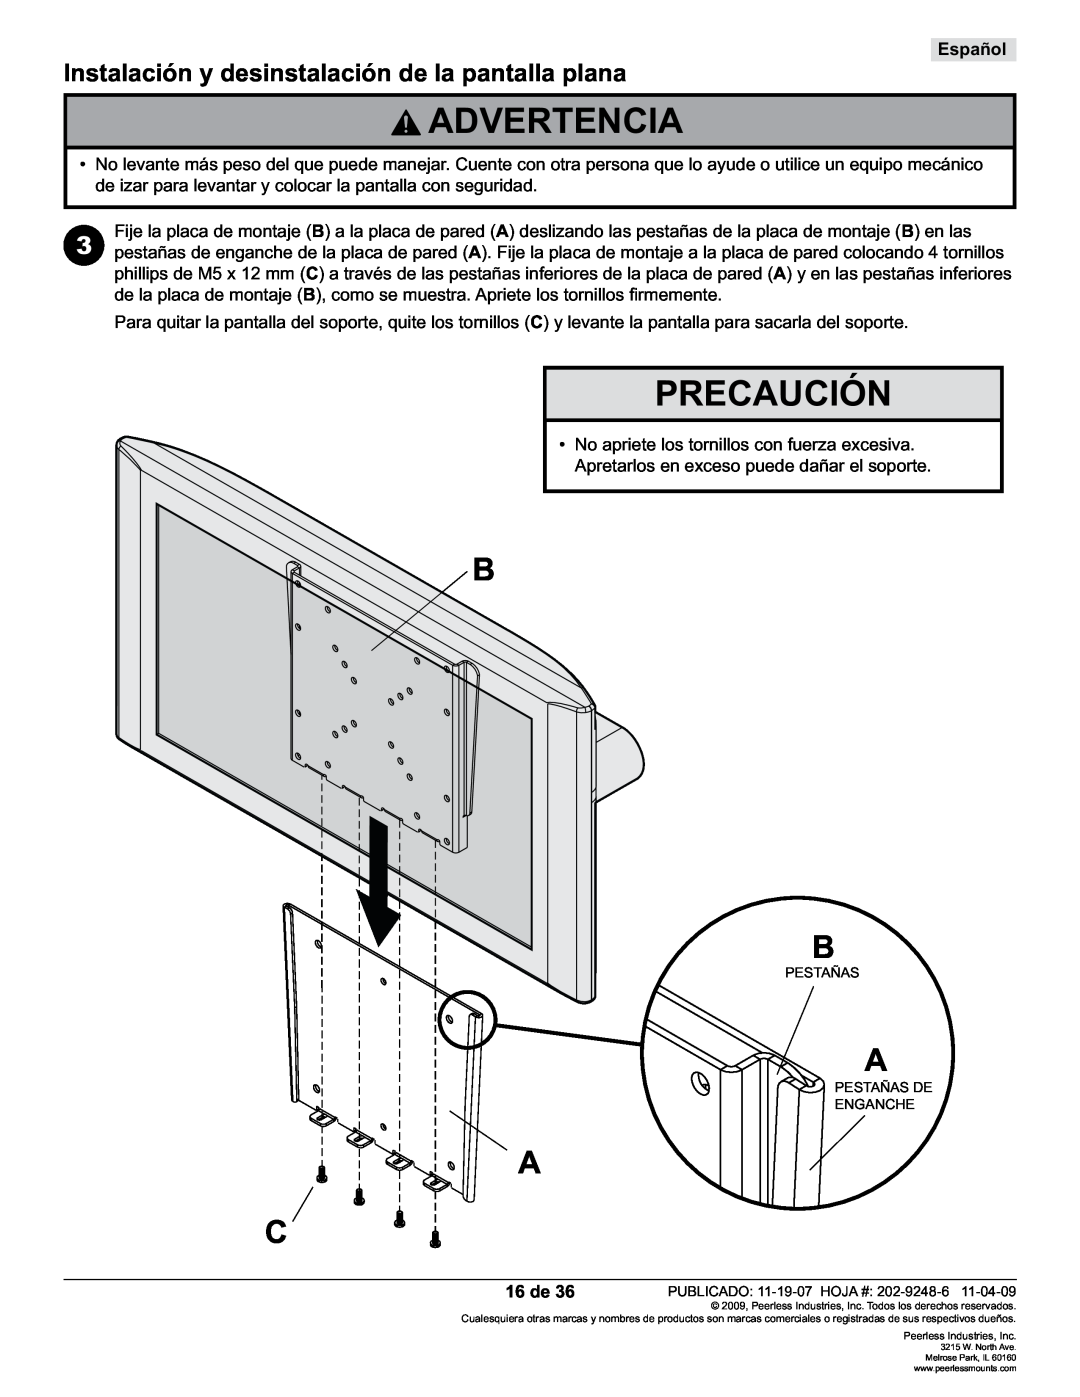 Peerless Industries PF632 manual Precaución, Instalación y desinstalación de la pantalla plana, Advertencia, Español, 16 de 